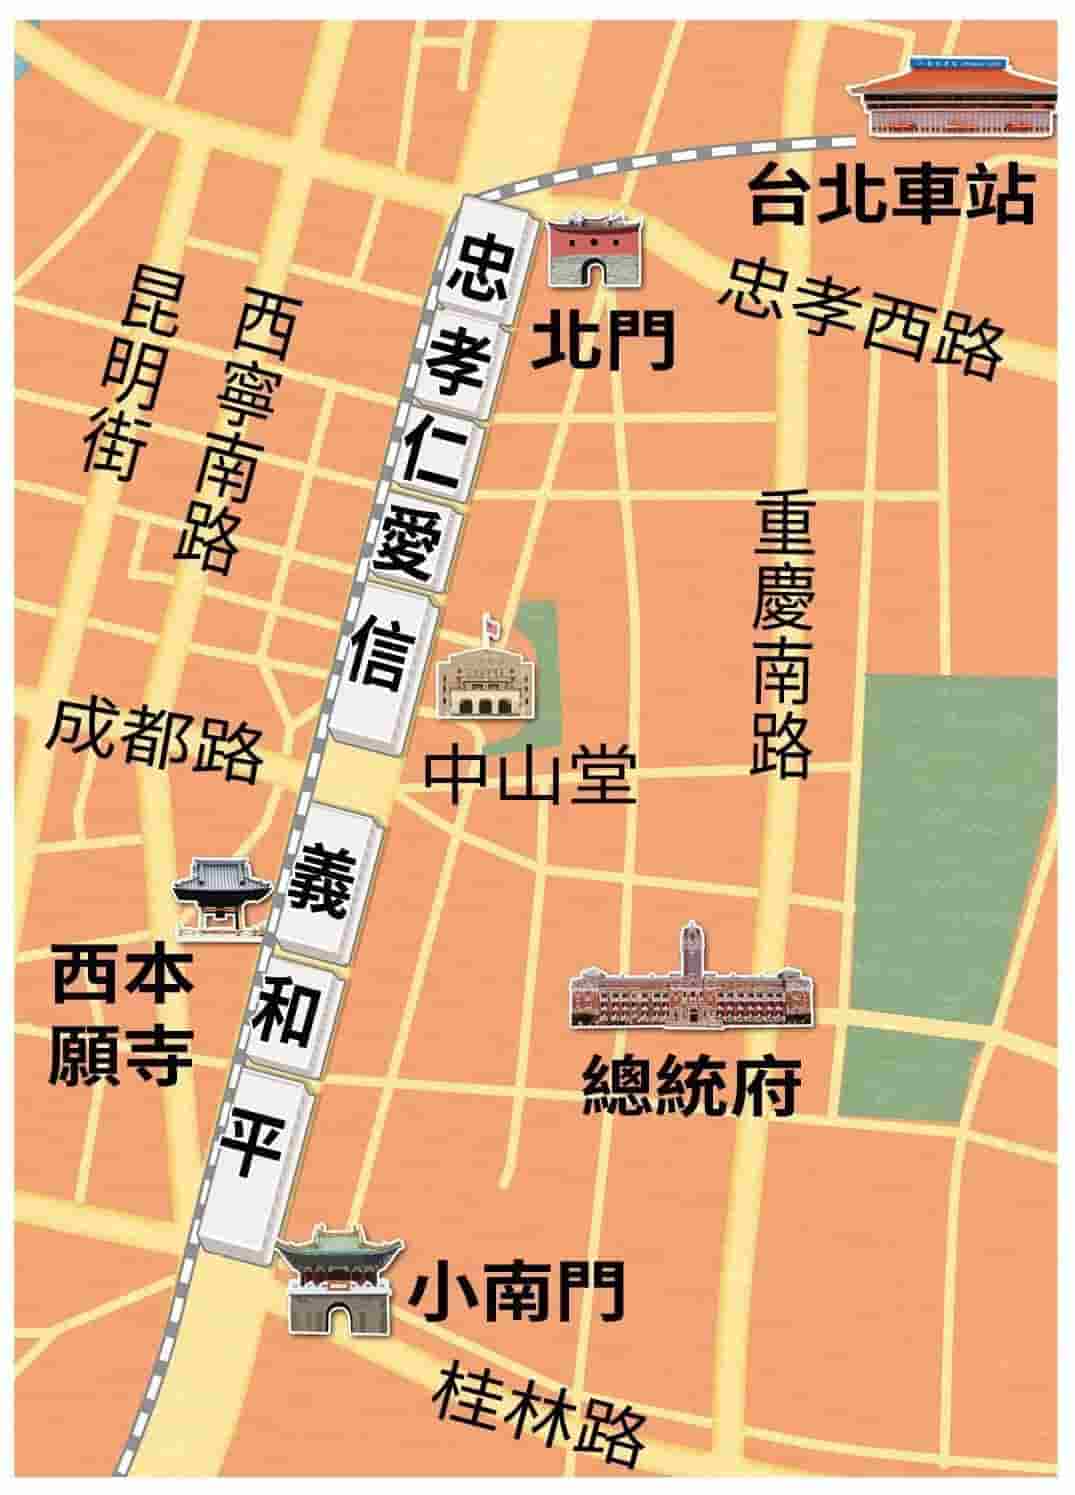 中華商場位置圖（出典：鏡週刊）